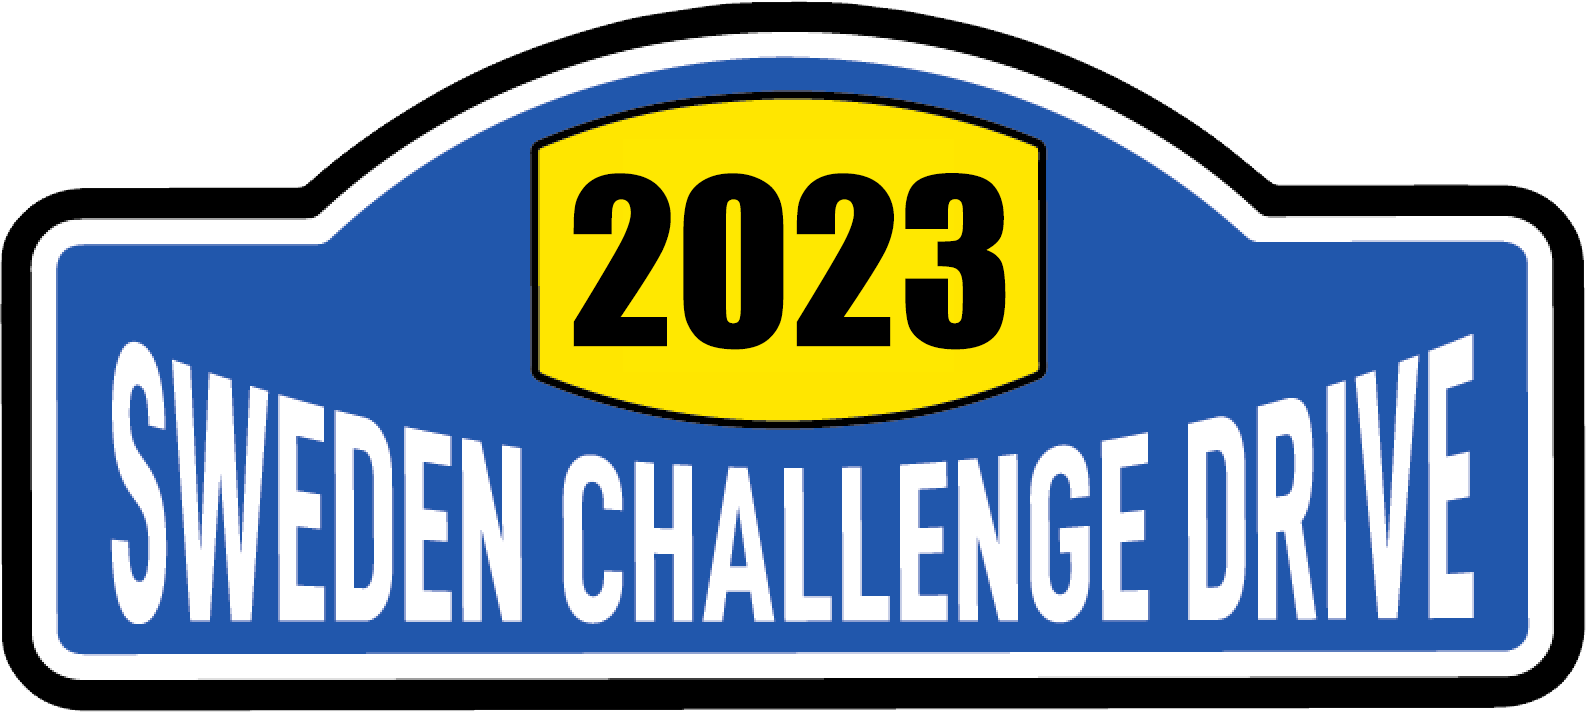 Sweden Challenge Roadbook Drive